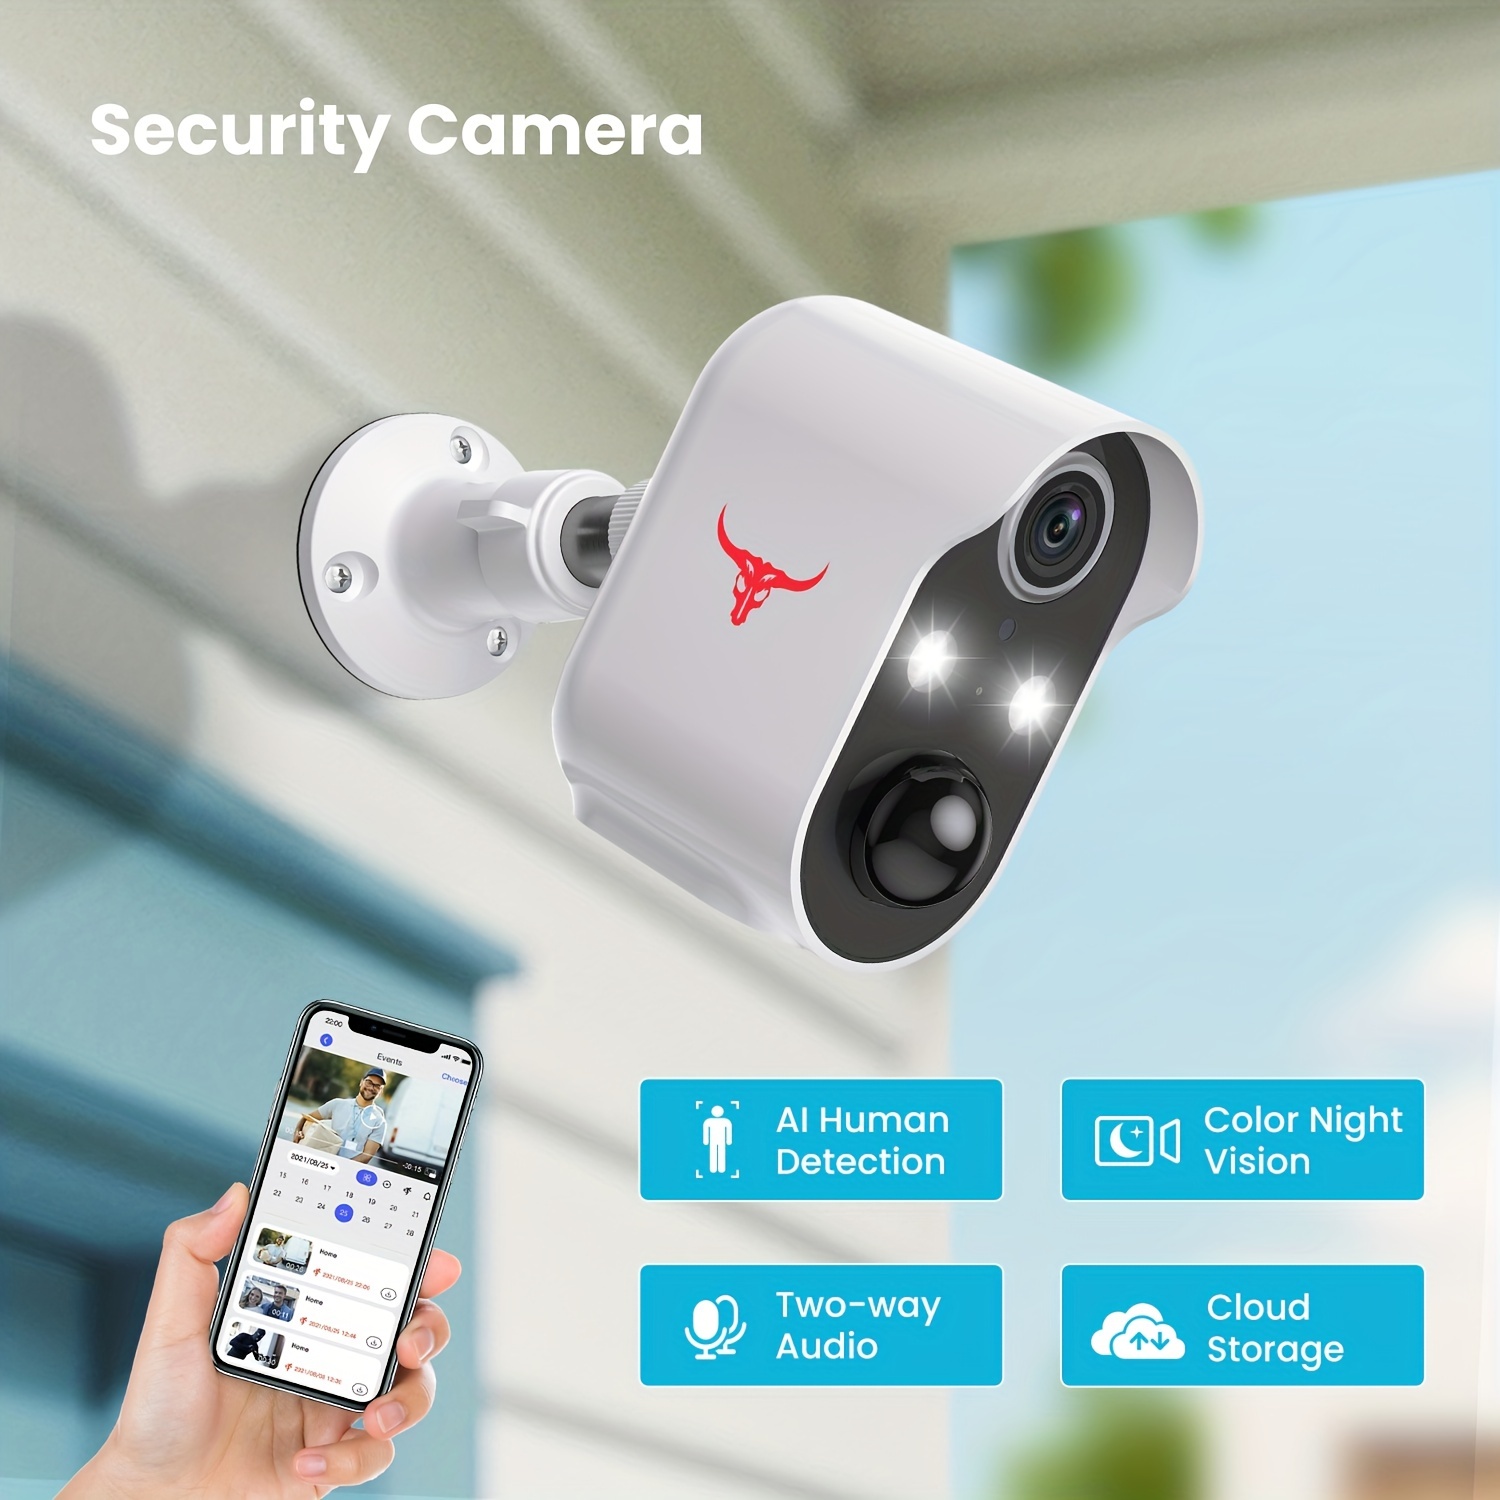 Anran Webcams y cámaras de red / IP /cámaras de seguridad